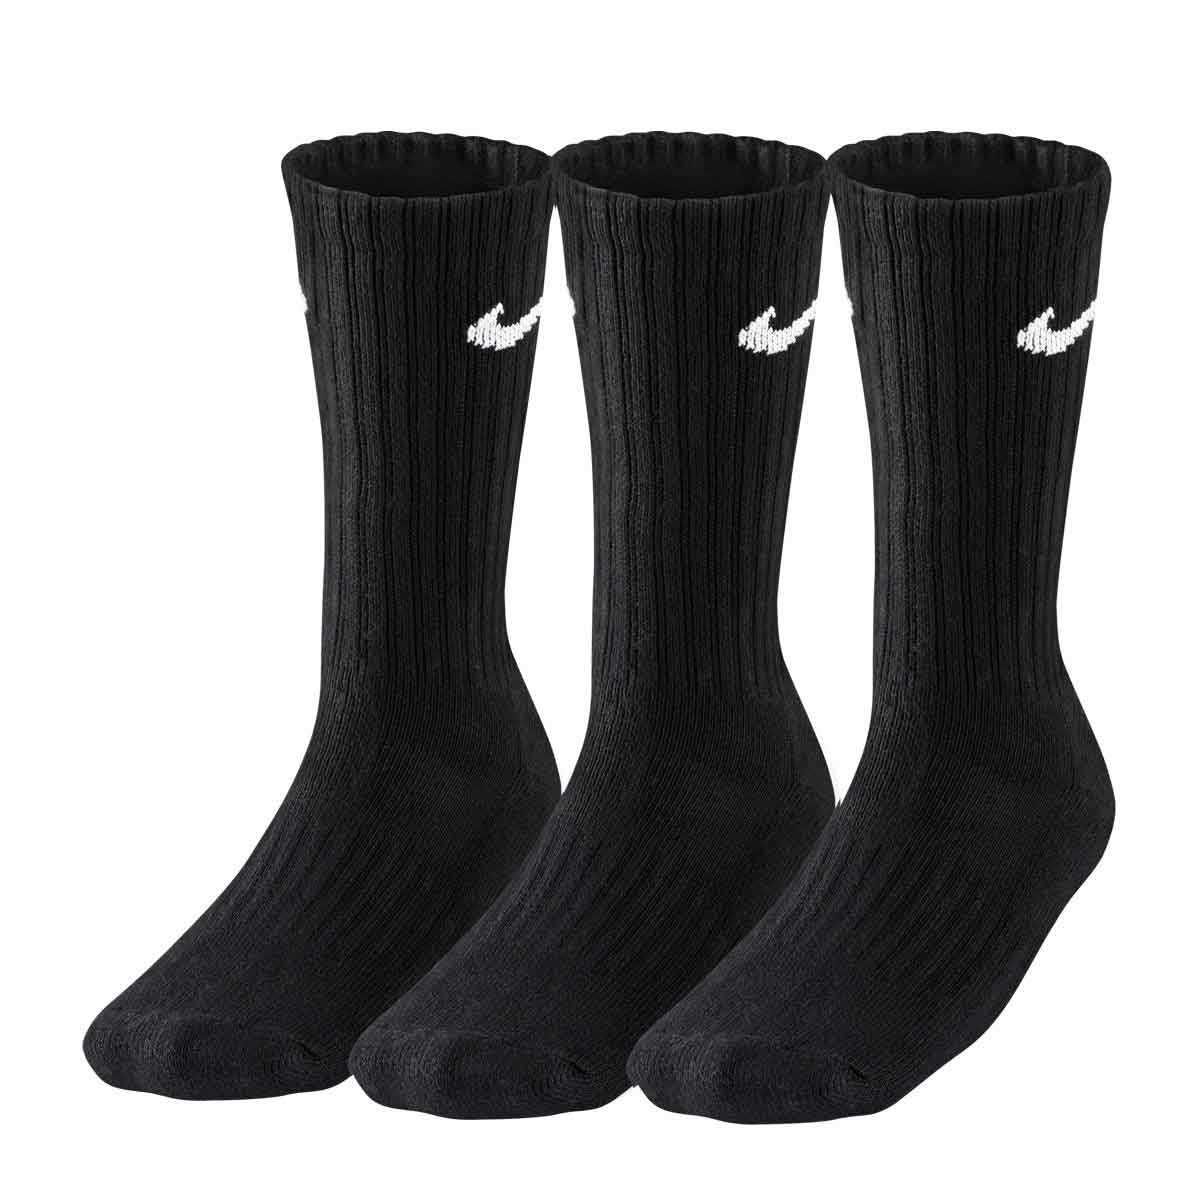 Chaussettes de sport Nike Value Cushion Crew - Noir - 3 paires